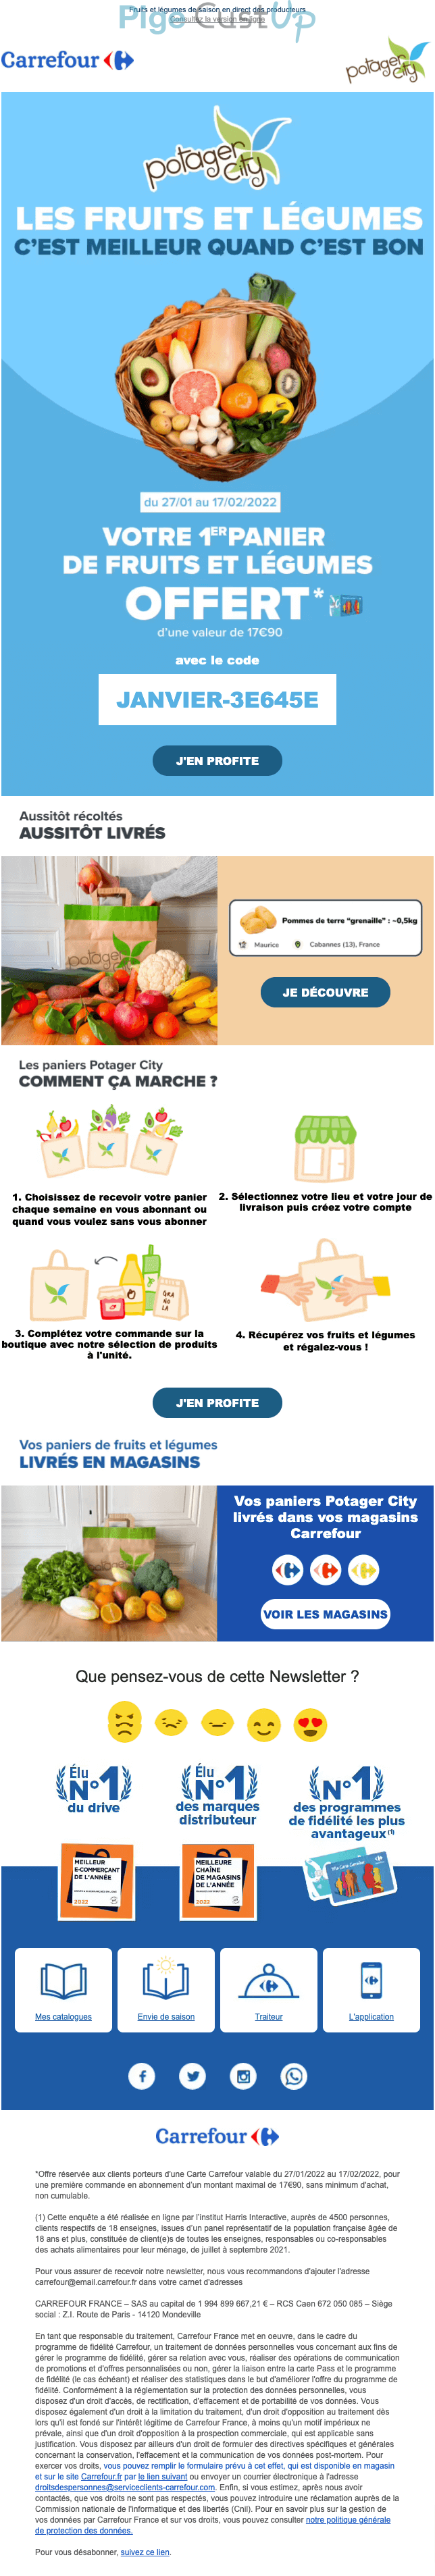 Exemple de Type de media   - Carrefour - Marketing Acquisition - Gratuit - Cadeau - Marketing fidélisation - Testeurs / Ambassadeurs